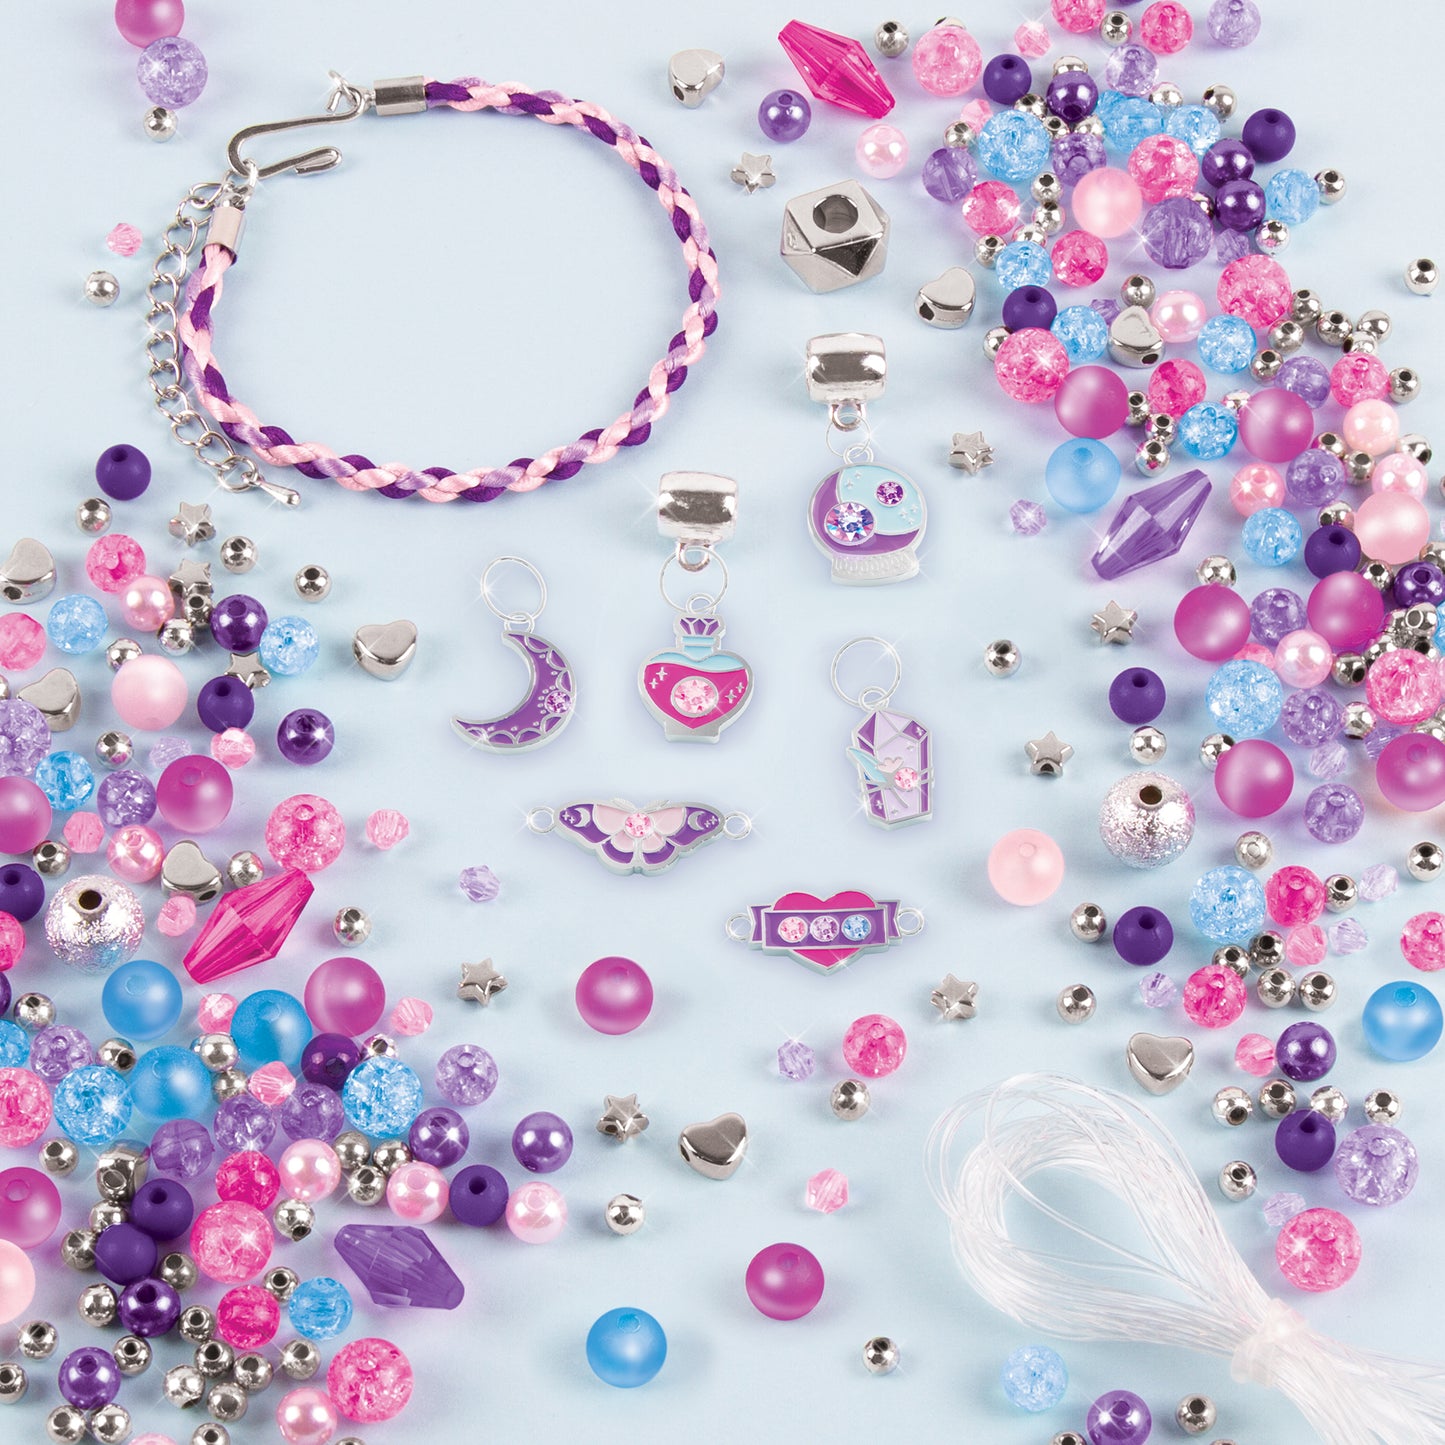 Crystal Dreams: Spellbinding Jewels & Gems